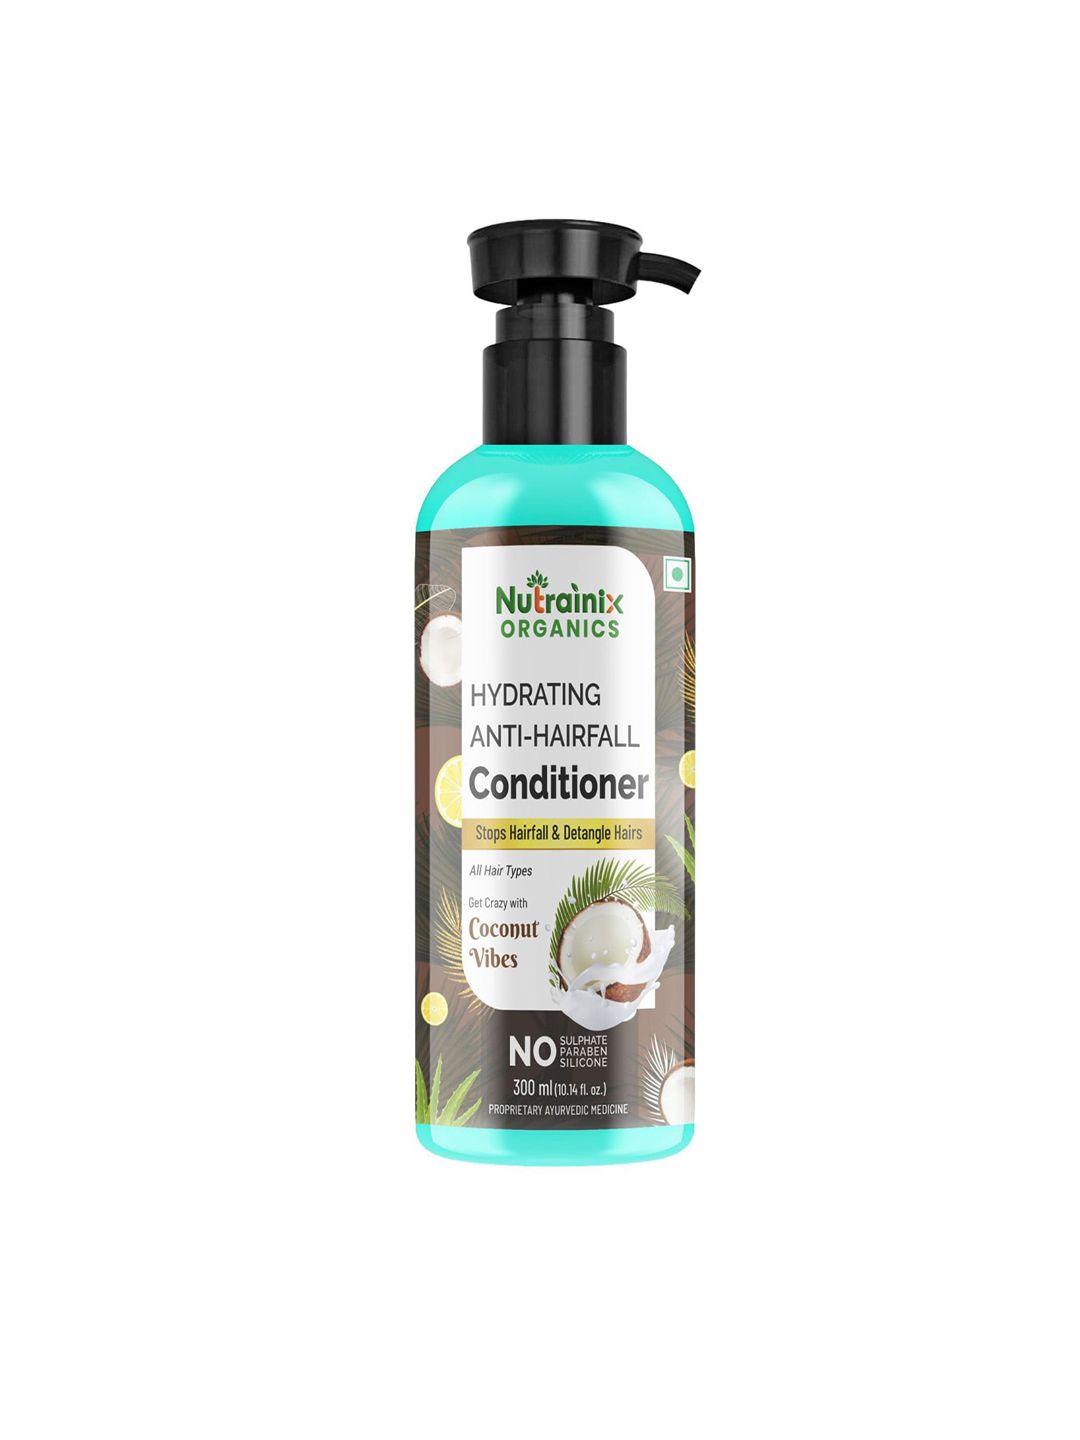 Nutrainix Organics White Anti-Hairfall Conditioner Price in India